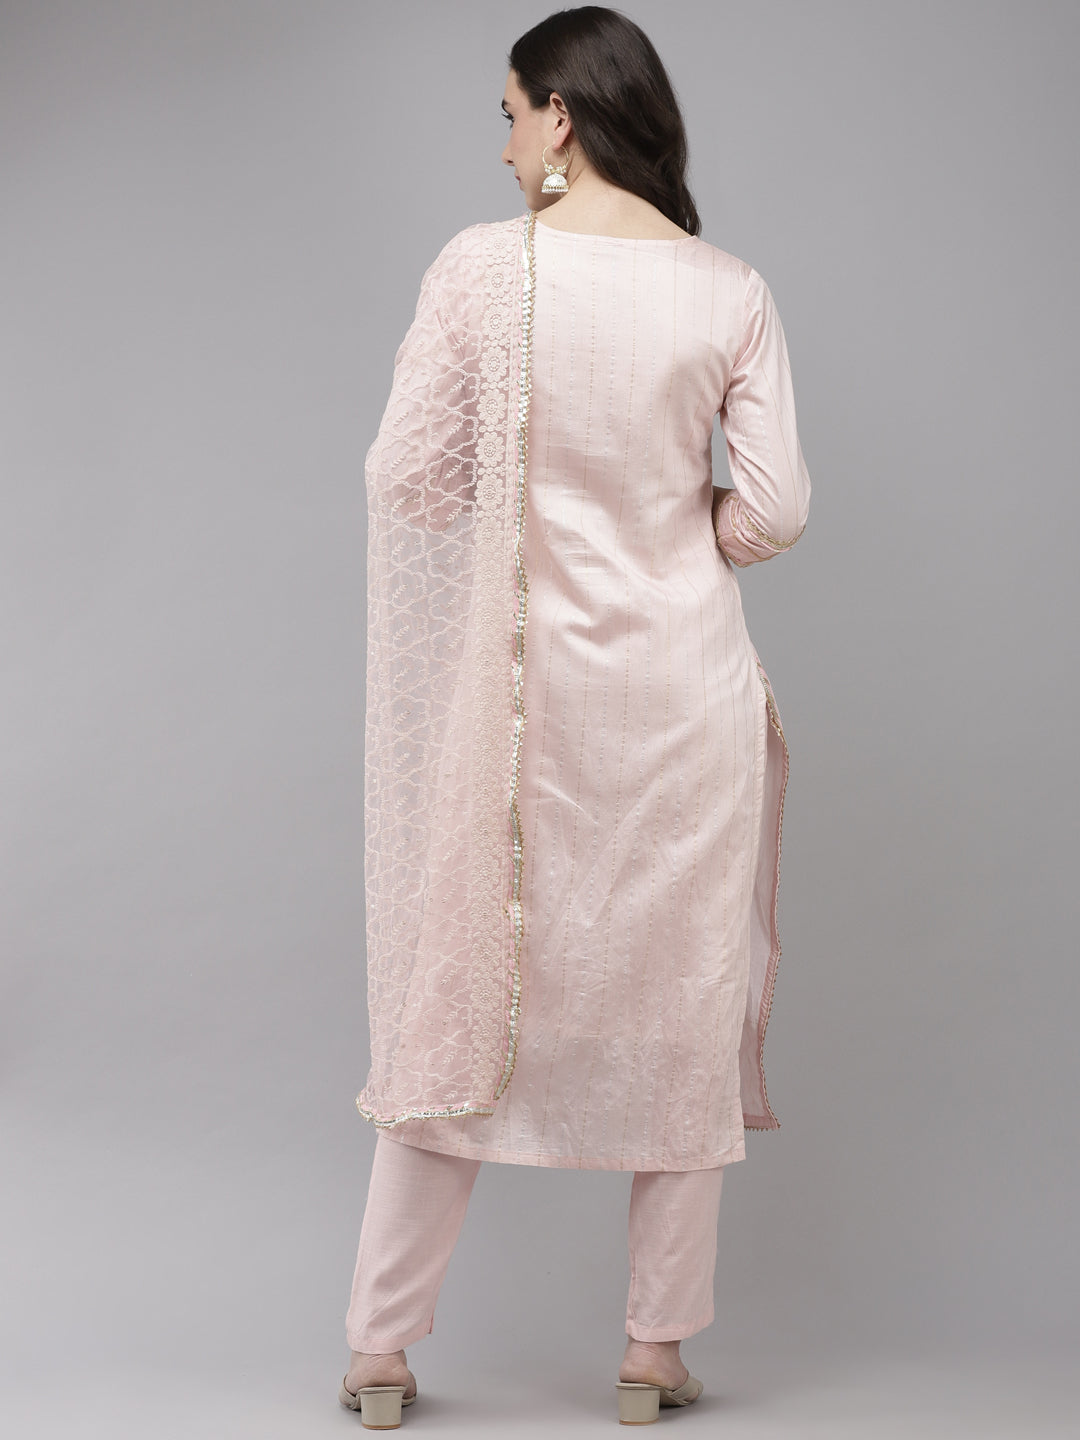 Women's Chanderi Silk Pink Embroidered A-Line Kurta Trouser Dupatta Set - Navyaa